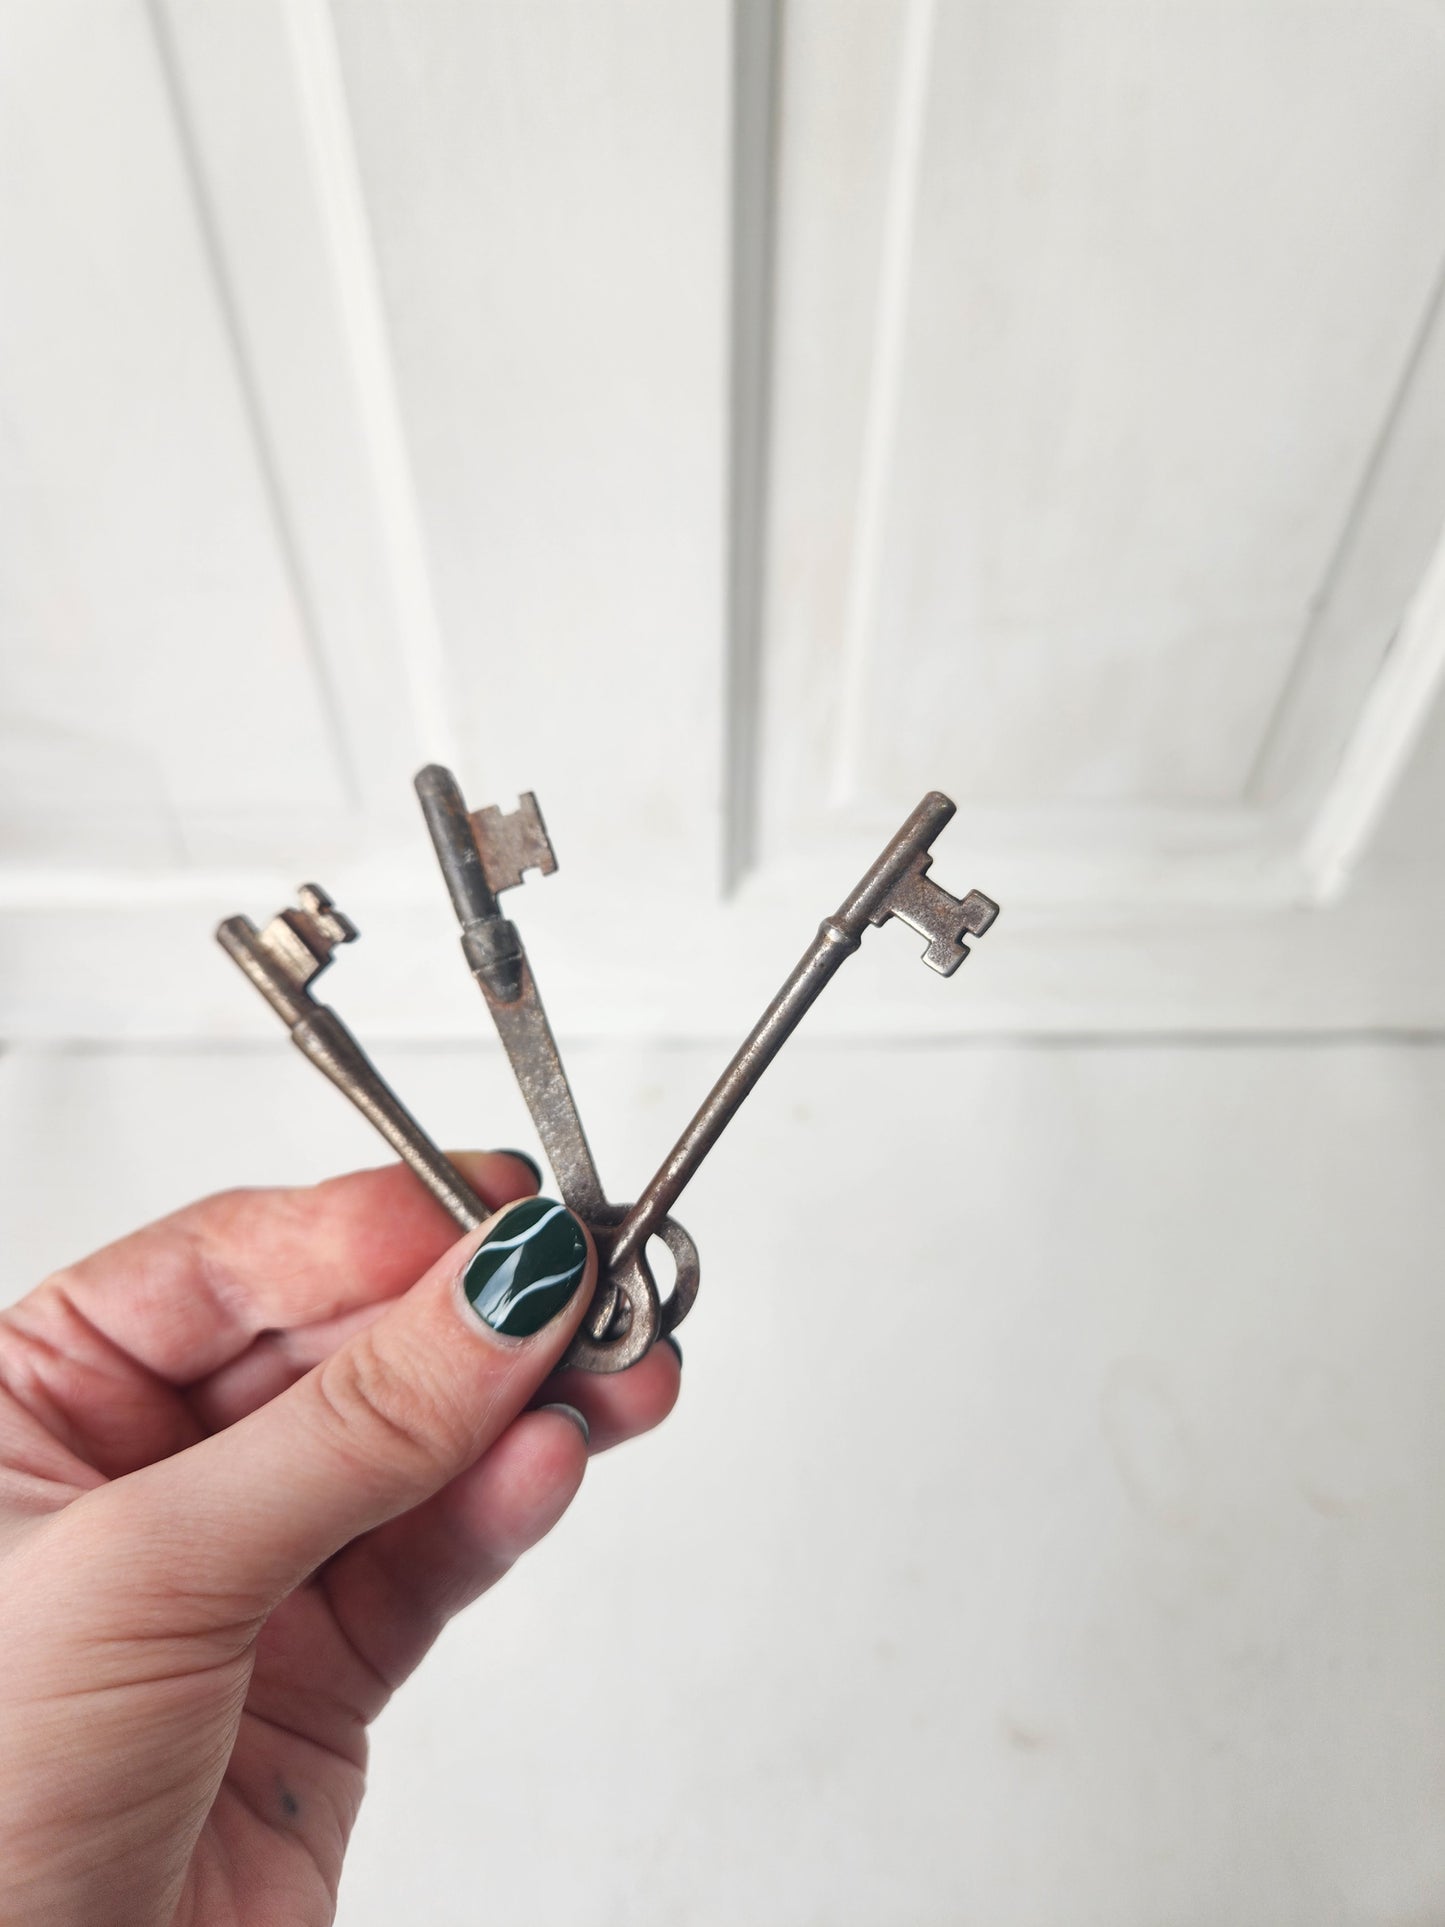 Set of Three Salvaged Vintage Keys, Antique Skeleton Key Set 102606